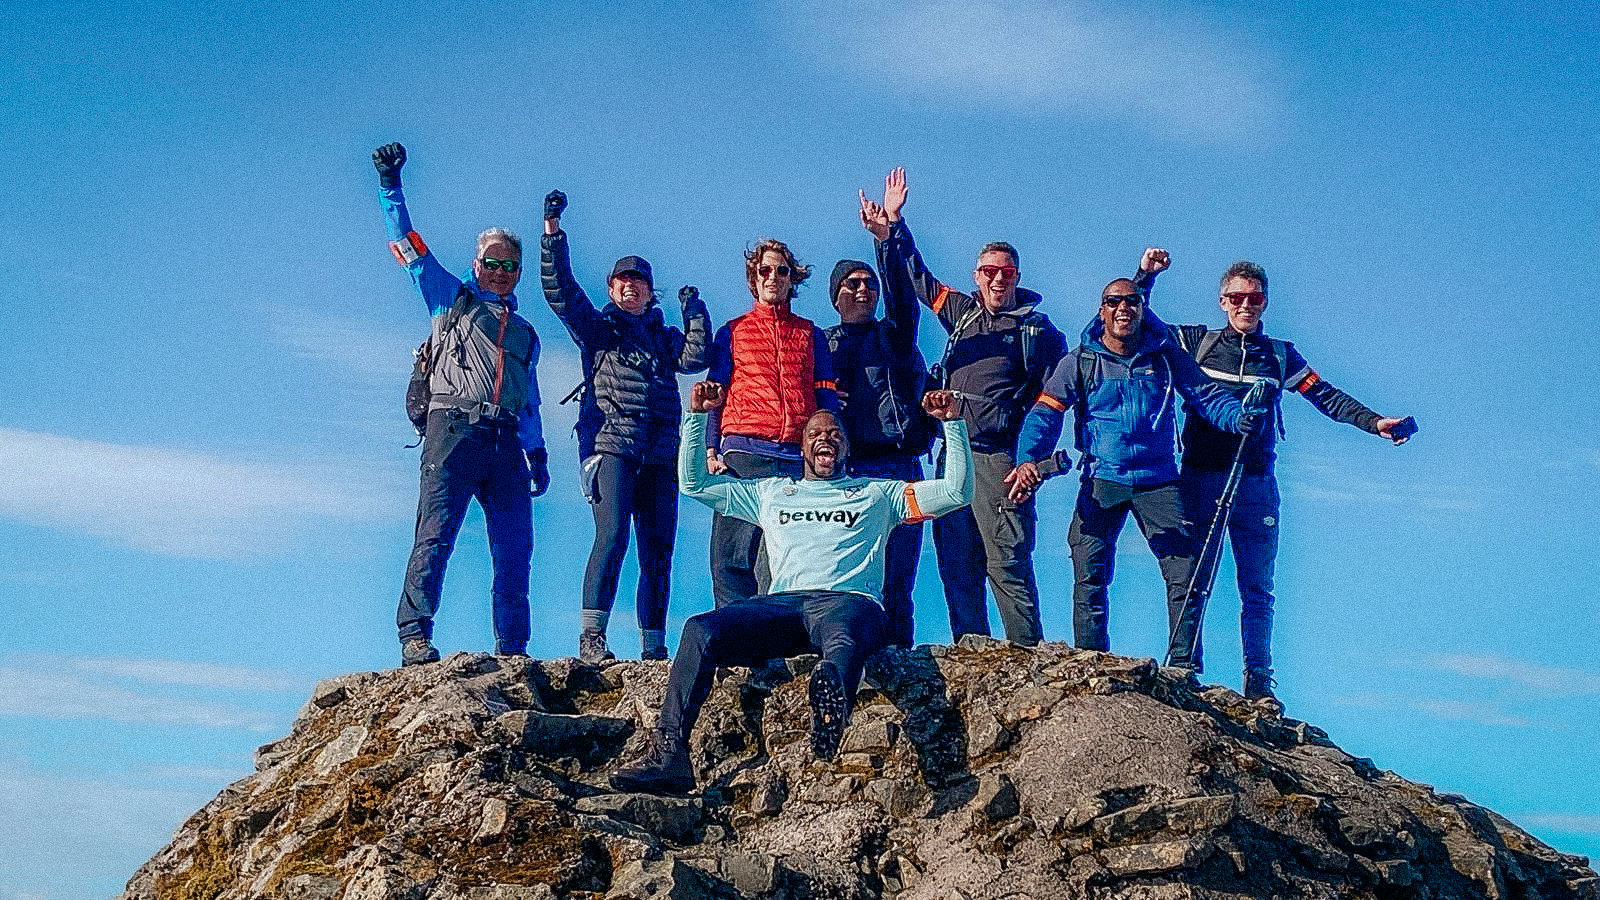 Marlon Harewood and his team complete Three Peaks Challenge